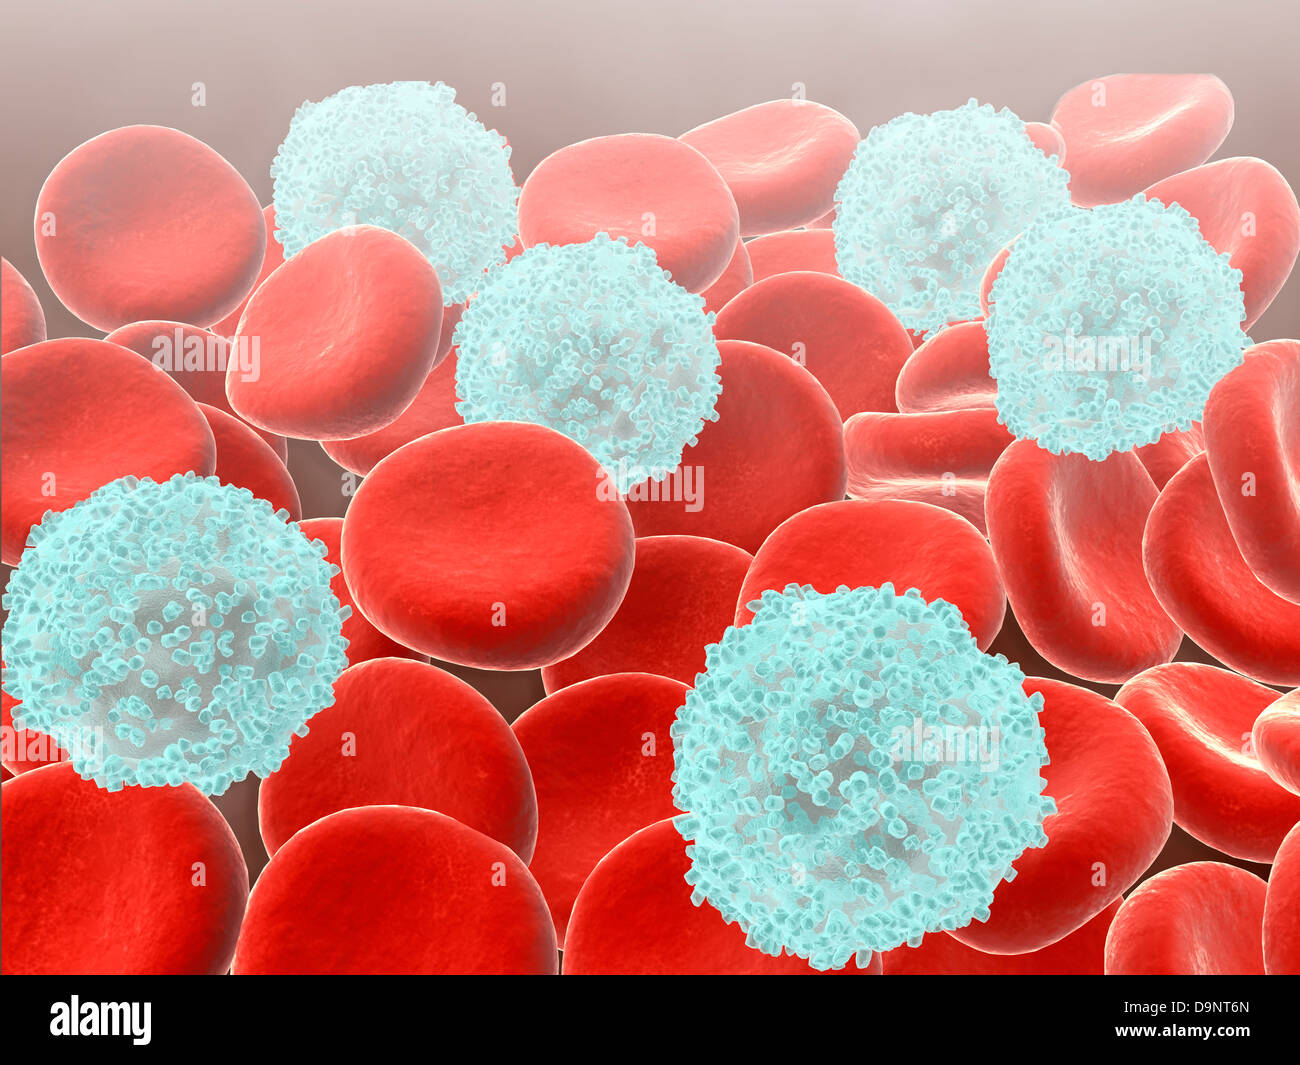 Rote Blutkörperchen mit weißen Blutkörperchen. Stockfoto